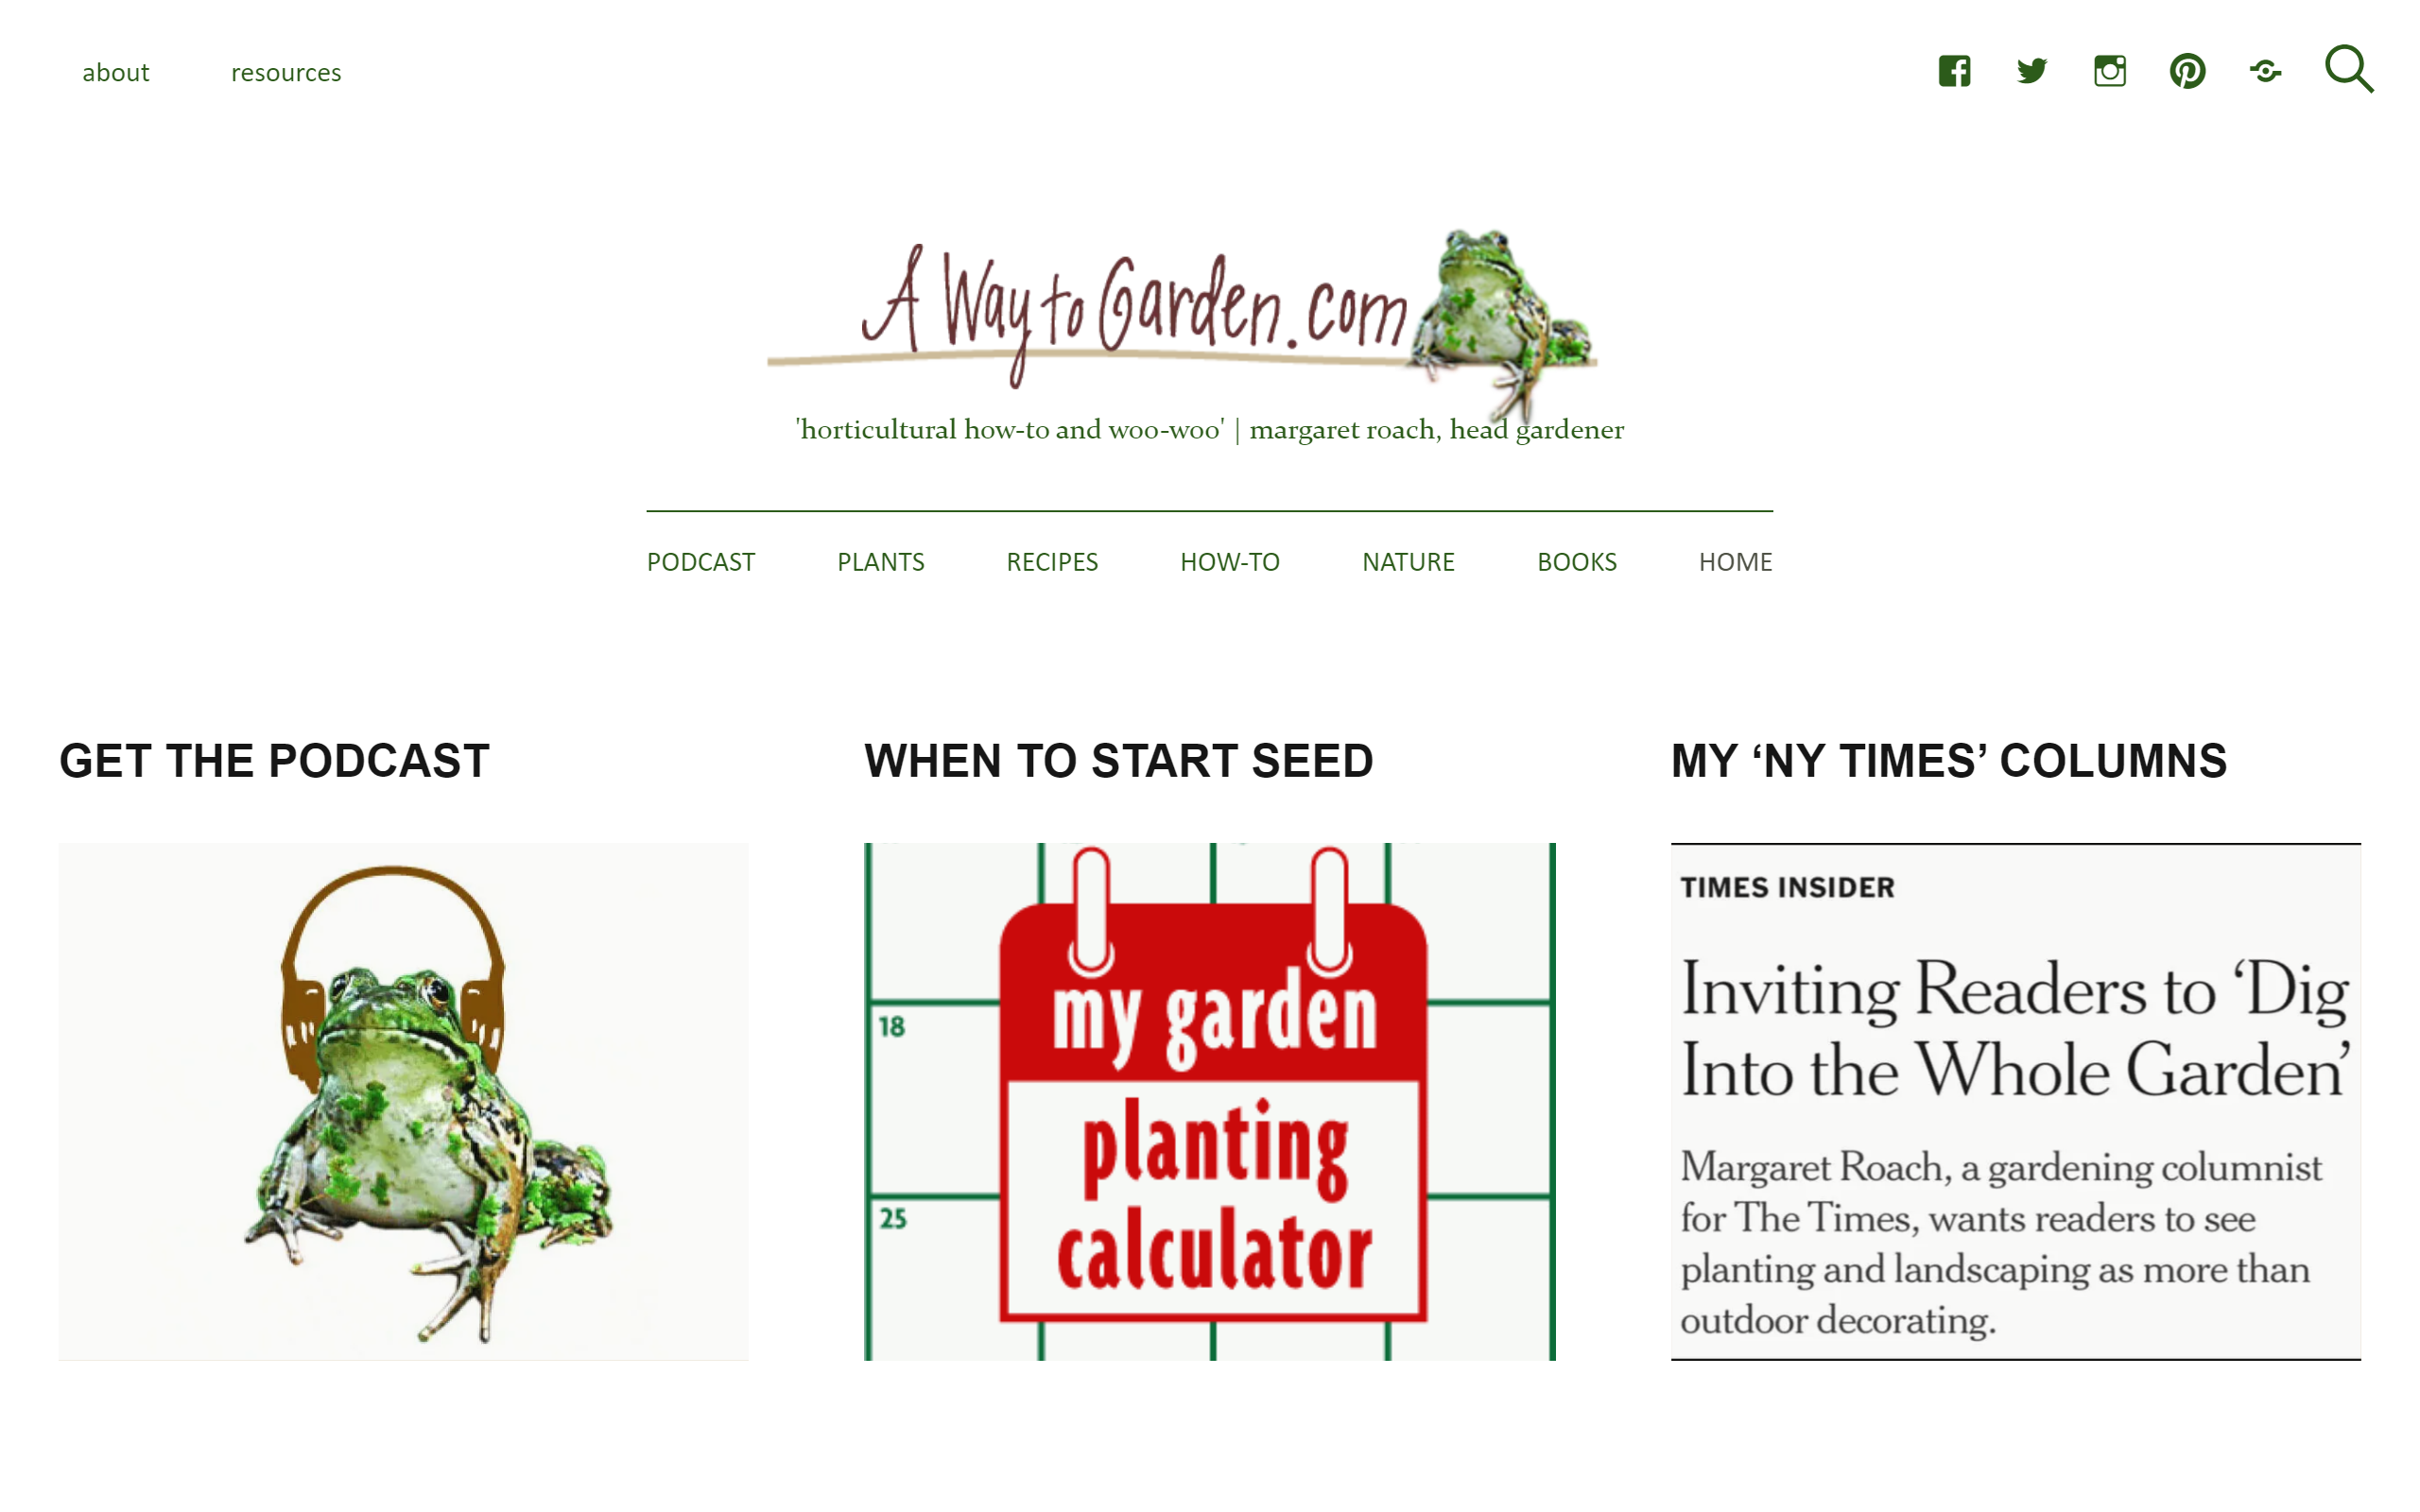 A Way to Garden gardening blog